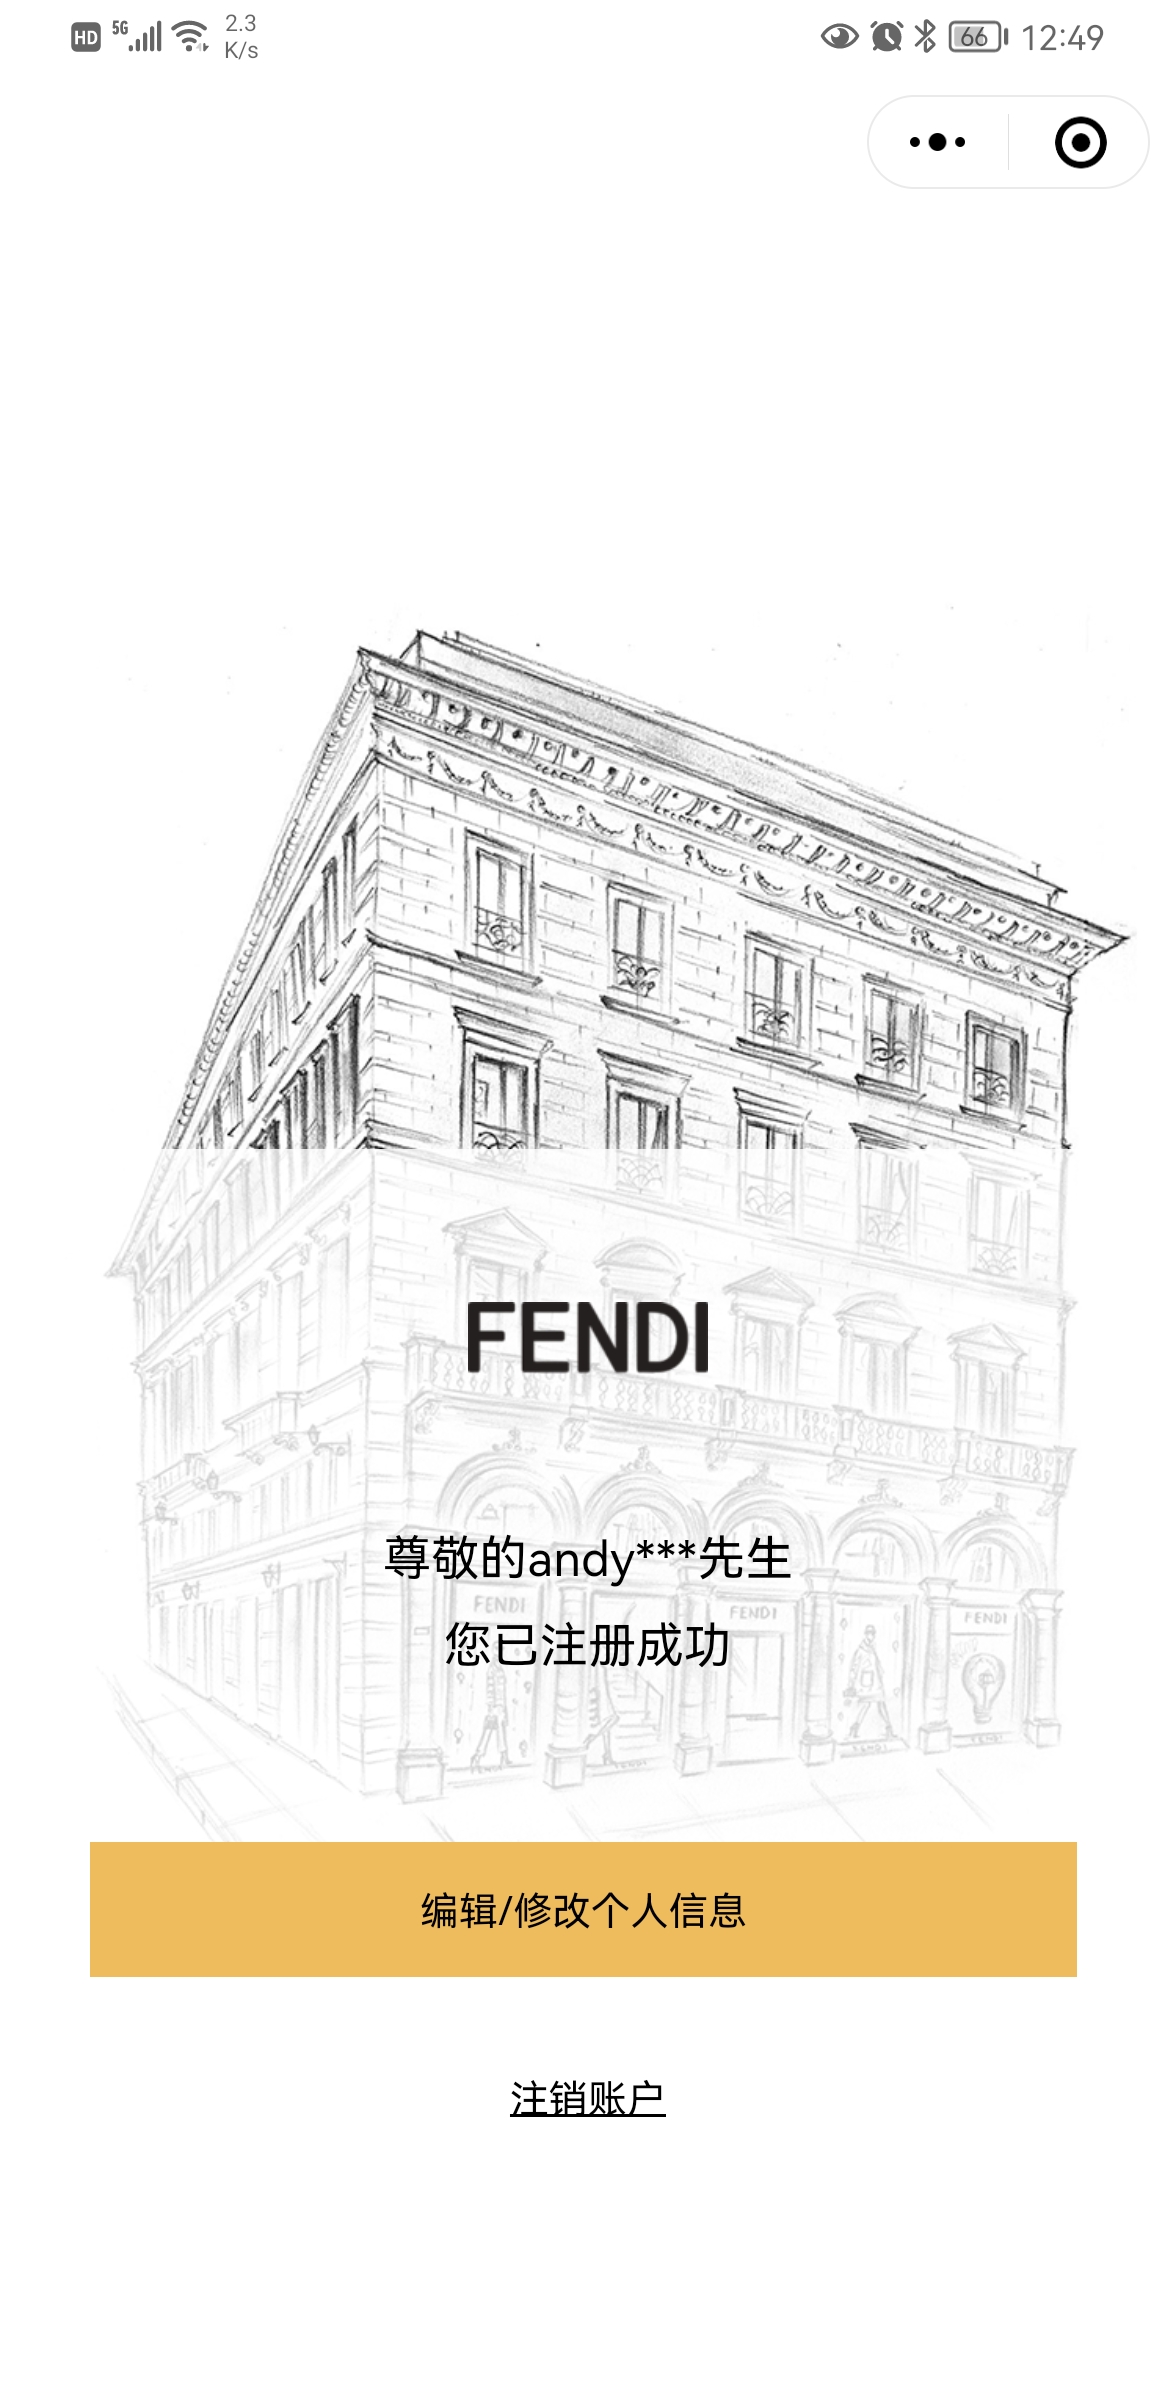 FENDI and ME小程序